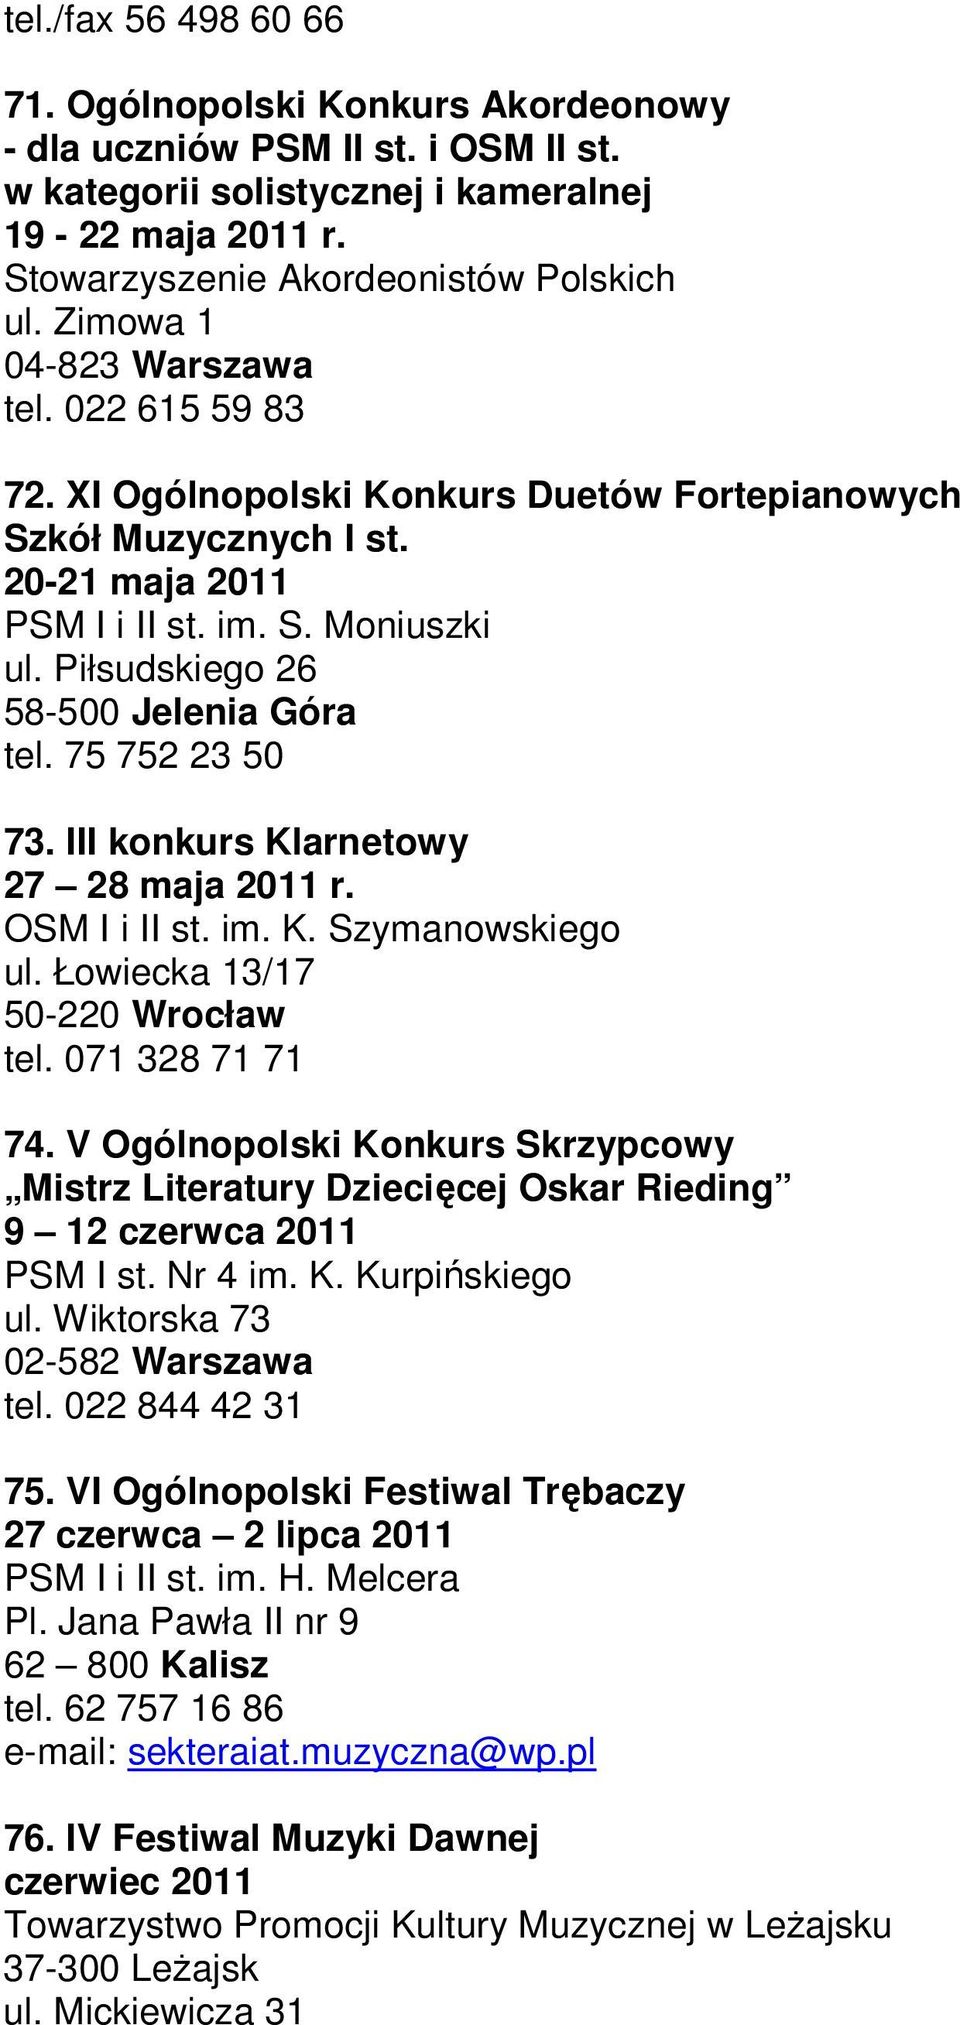 Piłsudskiego 26 58-500 Jelenia Góra tel. 75 752 23 50 73. III konkurs Klarnetowy 27 28 maja 2011 r. OSM I i II st. im. K. Szymanowskiego ul. Łowiecka 13/17 50-220 Wrocław tel. 071 328 71 71 74.